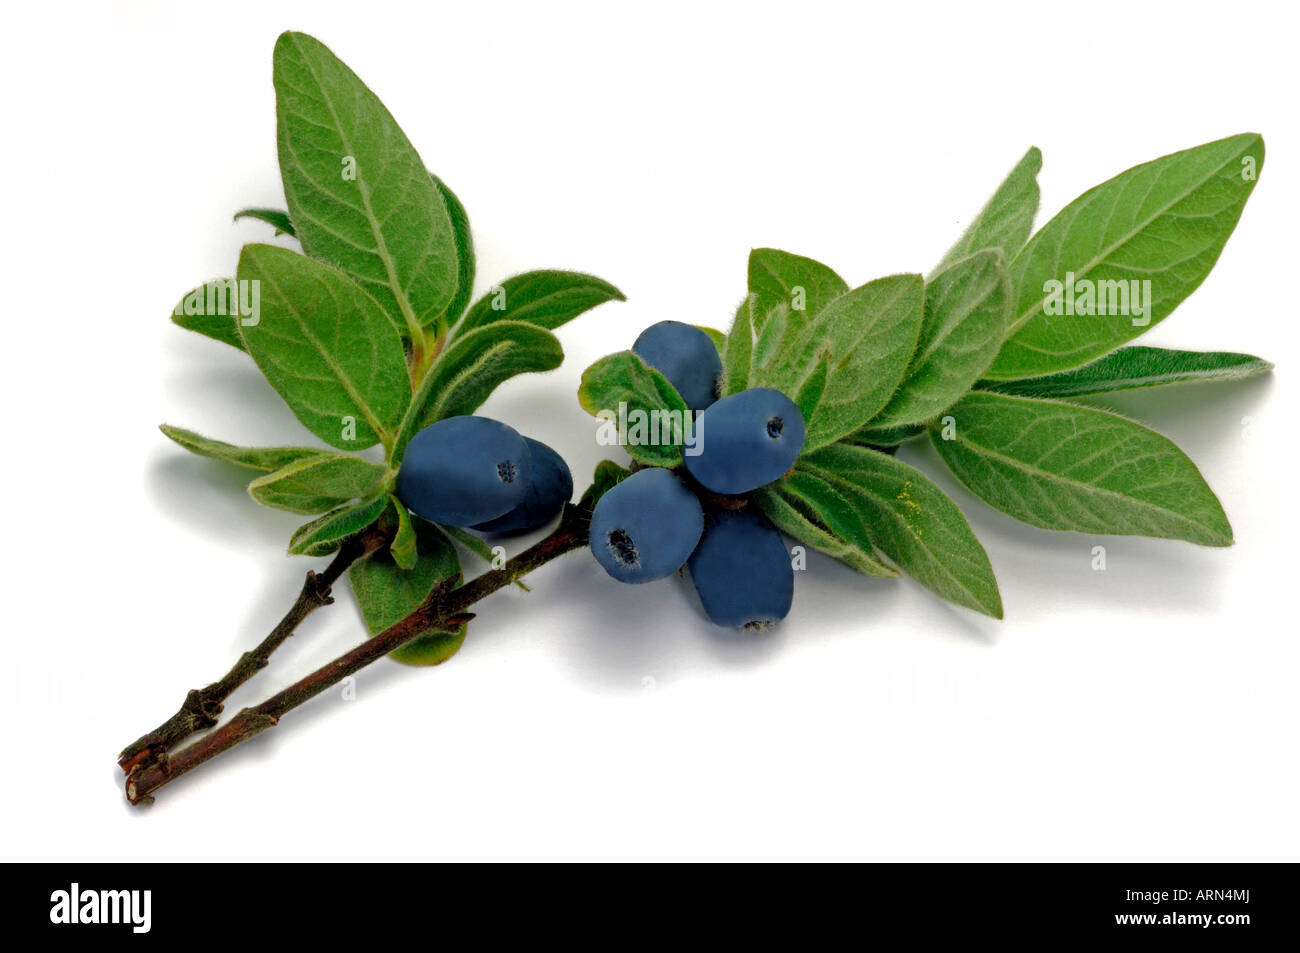 Blue Honeysuckle (Lonicera caerulea ssp. kamtschatica), twig with berries, studio picture Stock Photo